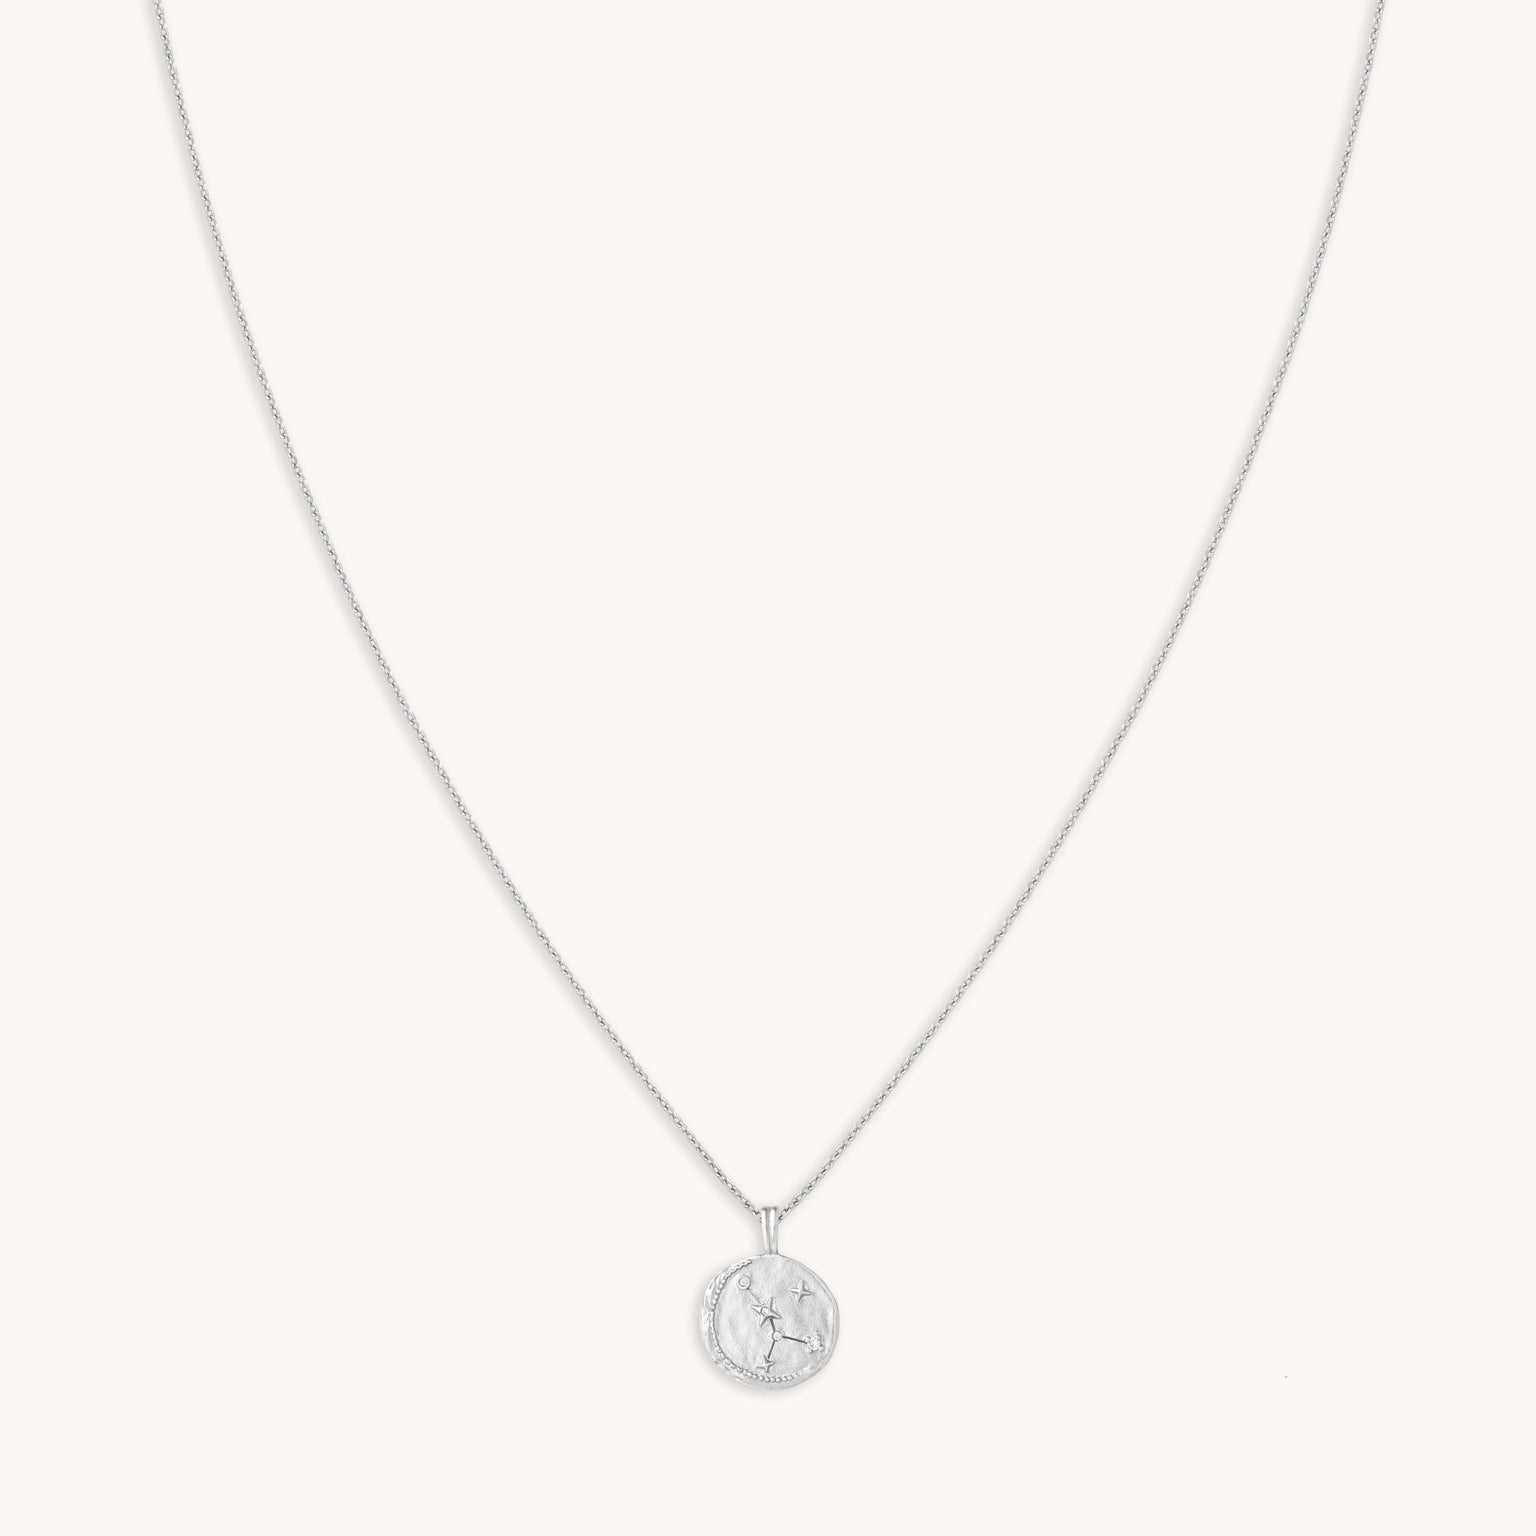 Cancer Zodiac Silver Pendant Necklace | Astrid & Miyu Necklaces